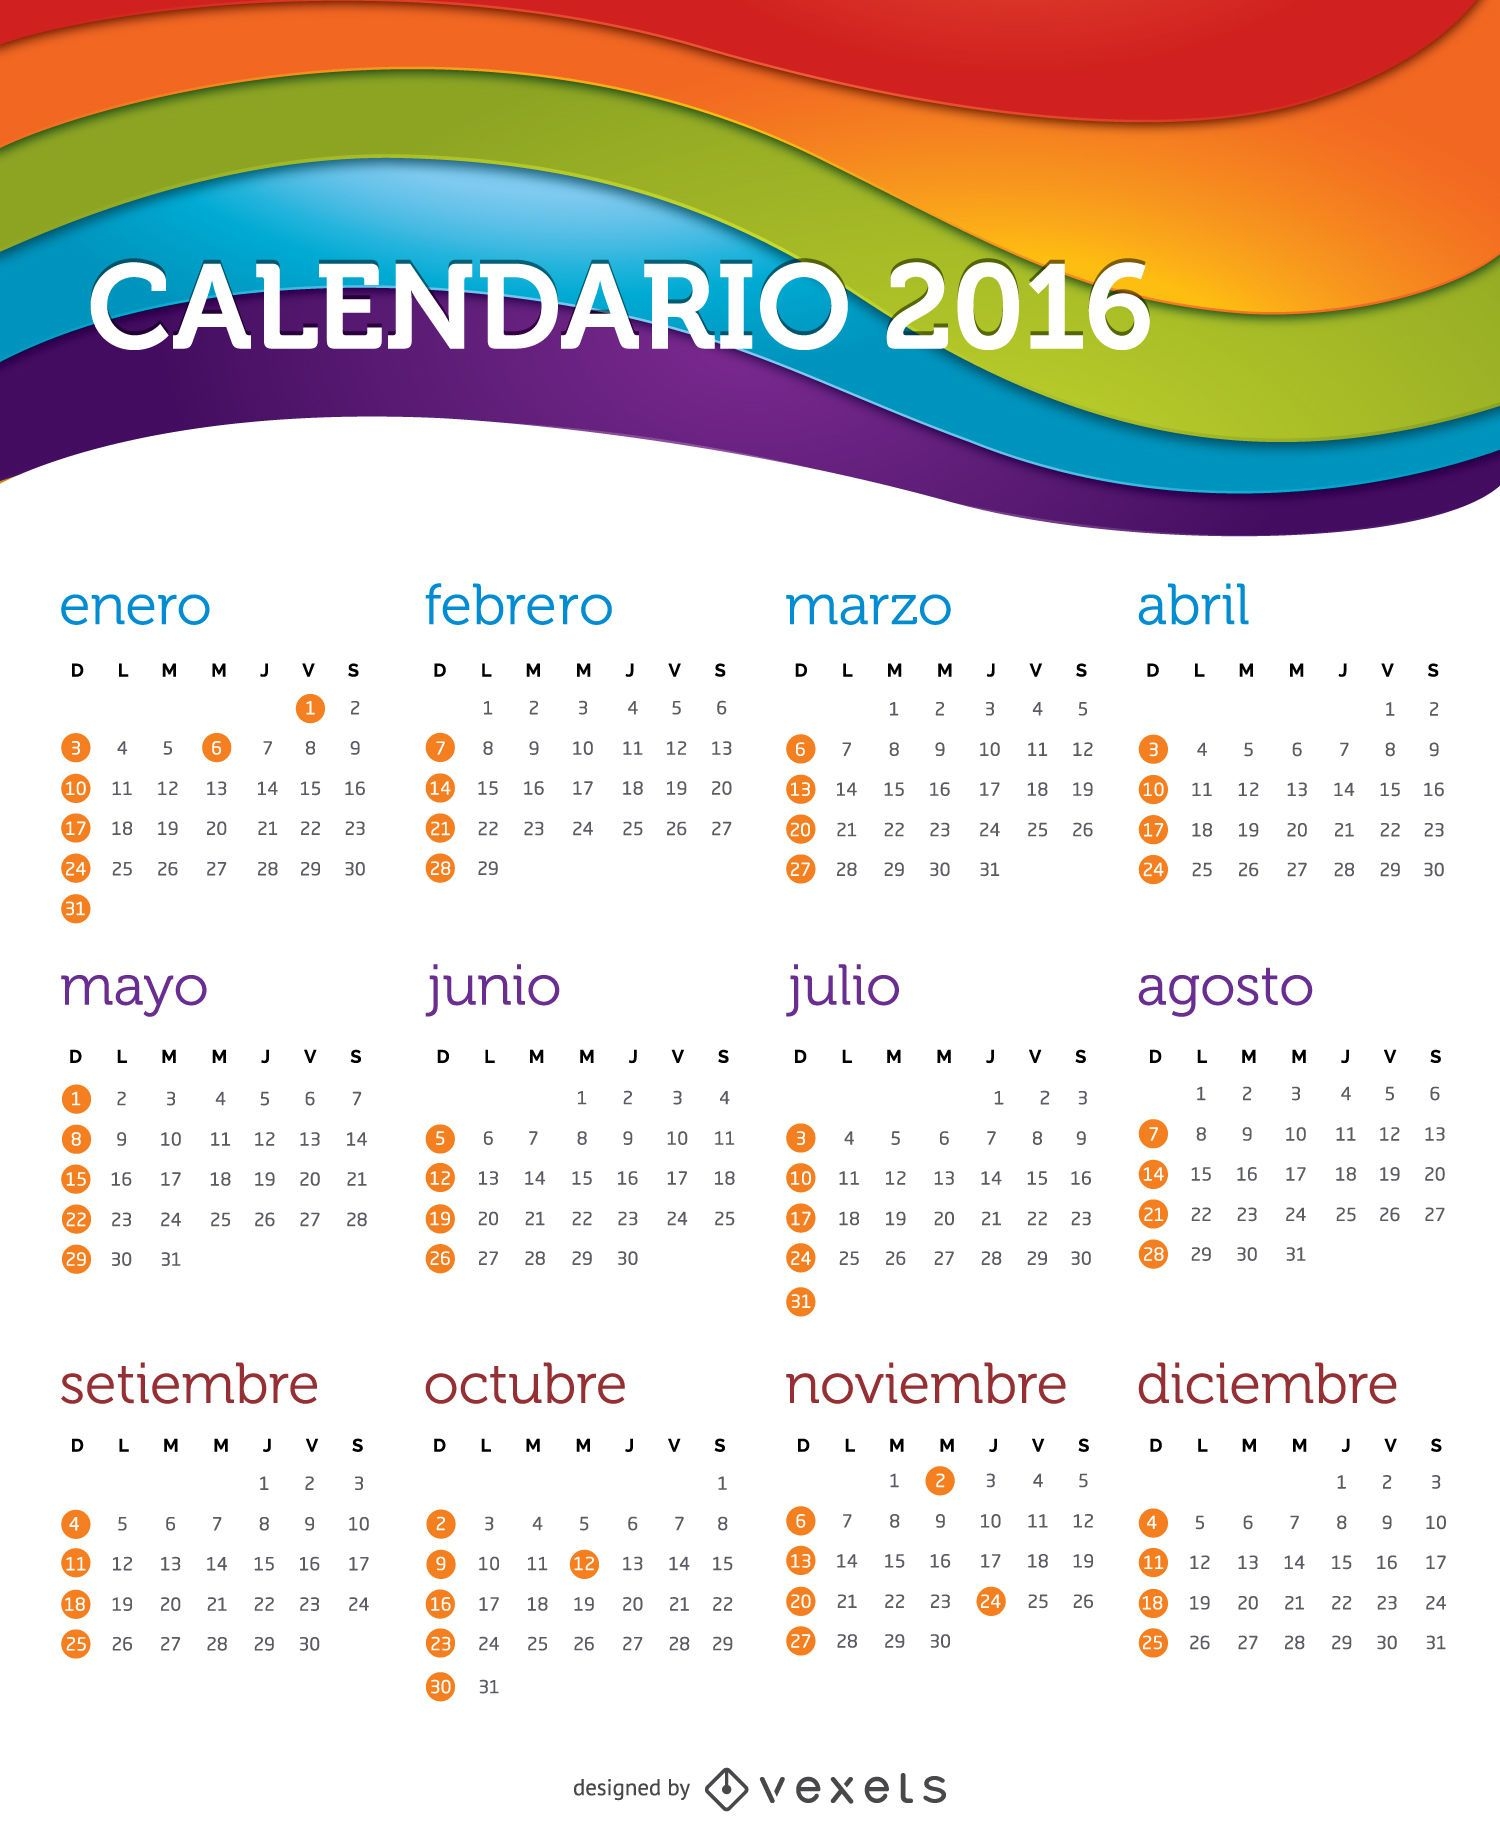 Calendário 2016 espanhol